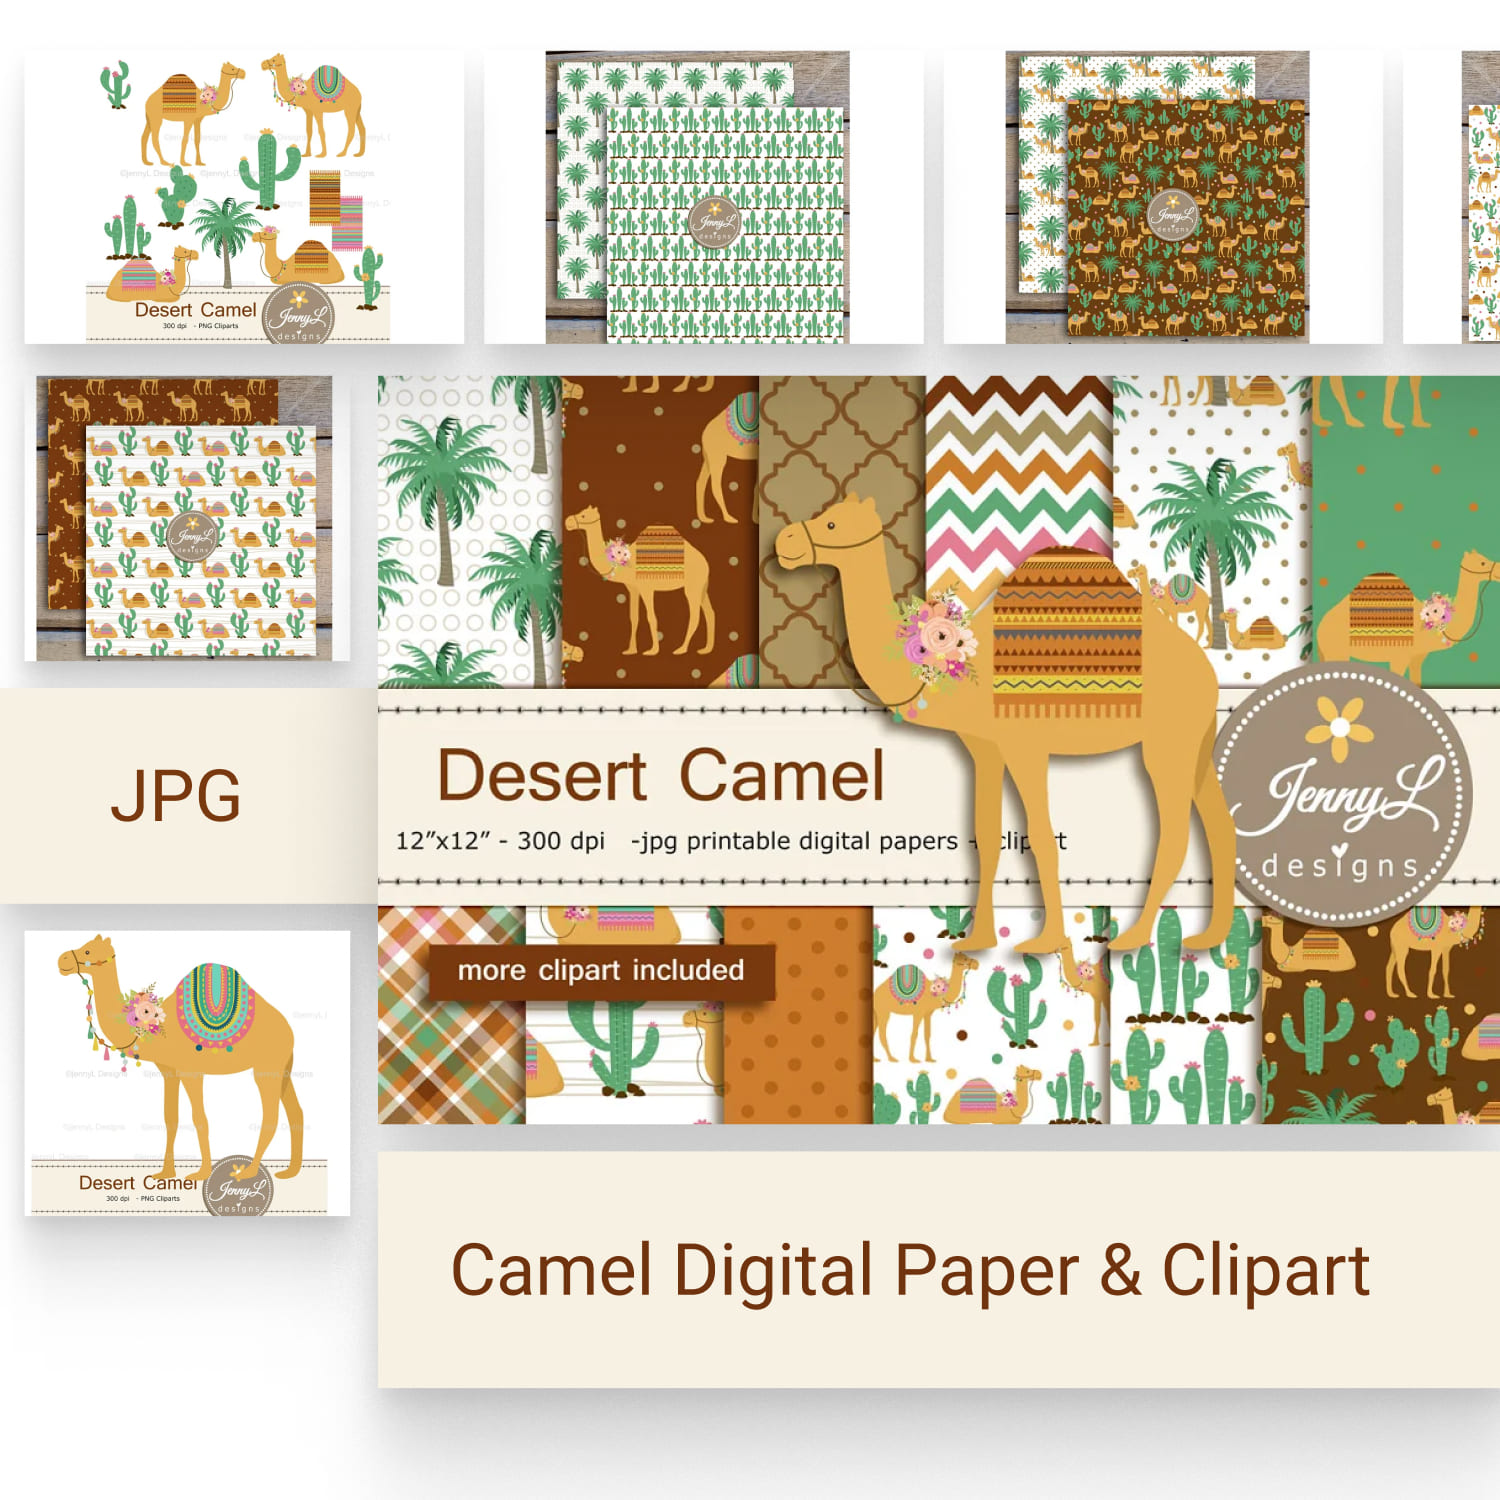 Camel Digital Paper & Clipart.